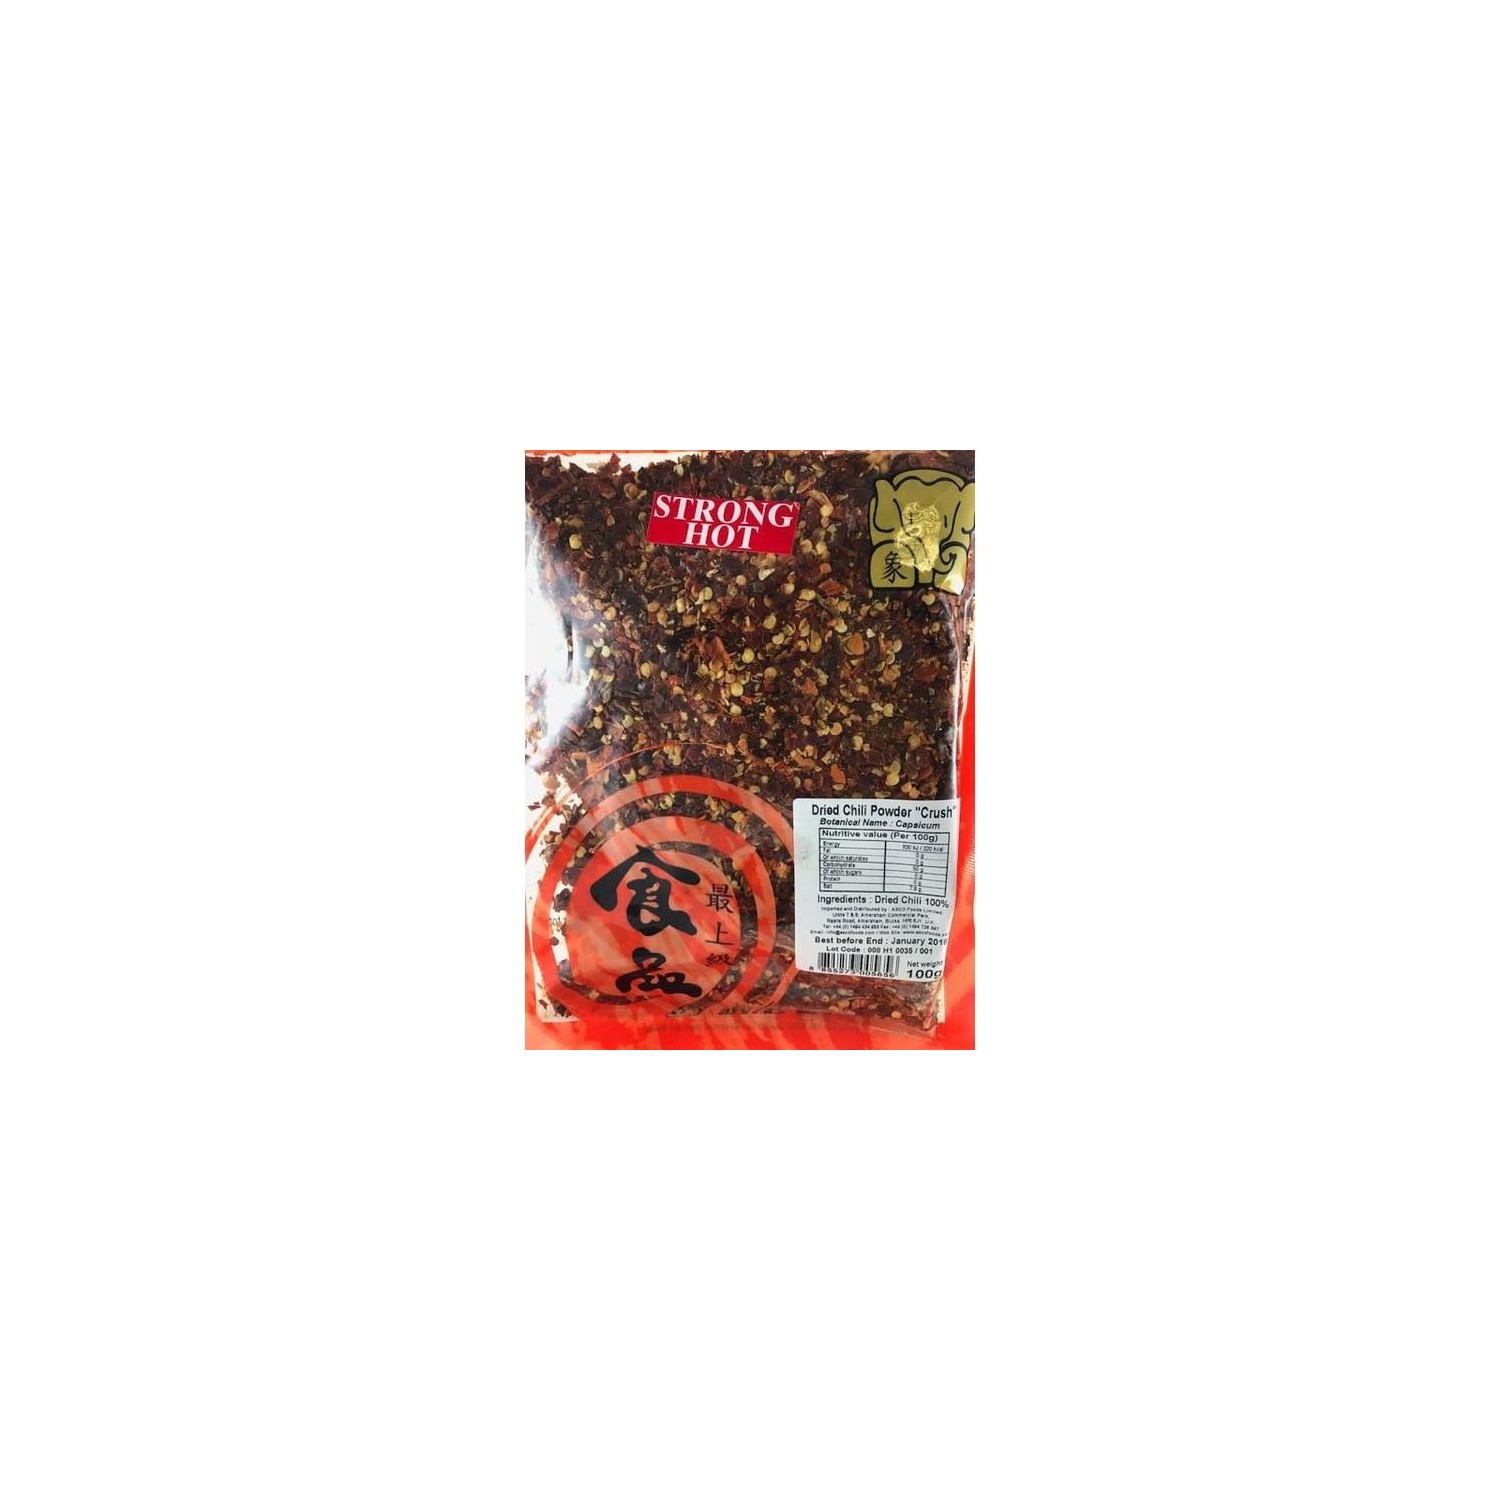 Chang 100g Dried Chili Powder - Strong/Hot